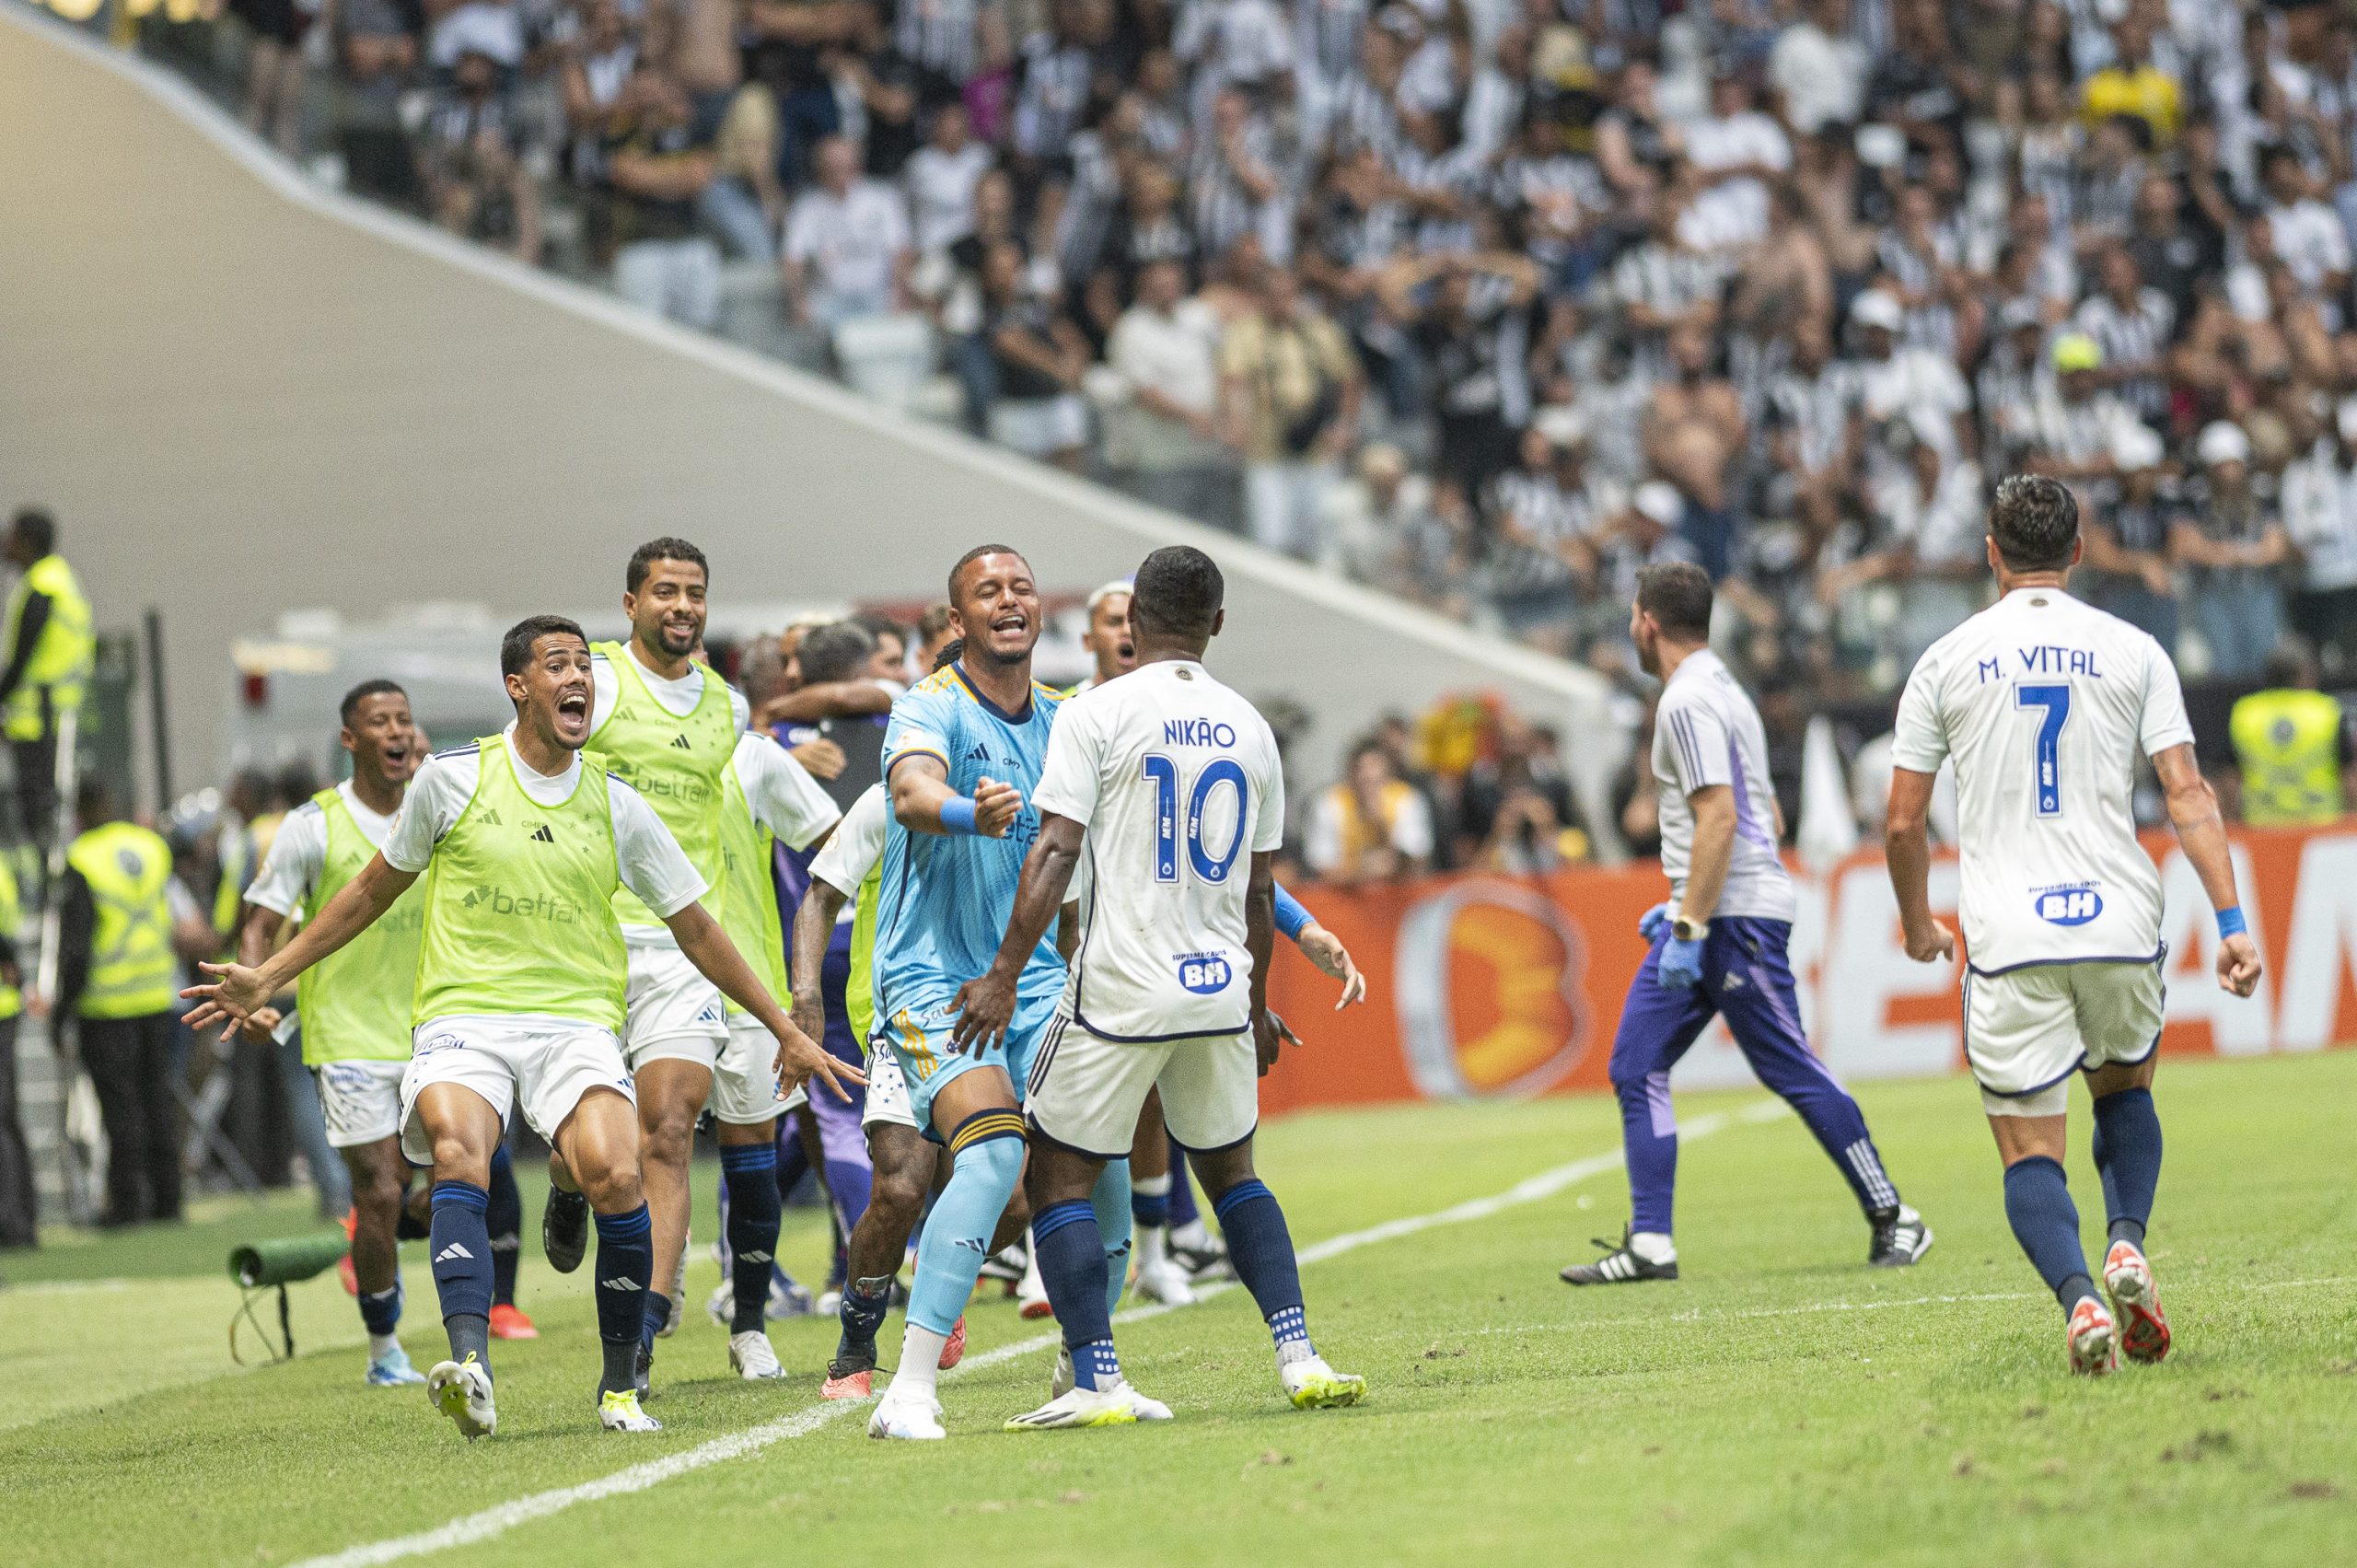 Jogadores celebraram muito a vitória no primeiro clássico da Arena MRV (Foto: Divulgação/Staff Images/Cruzeiro)